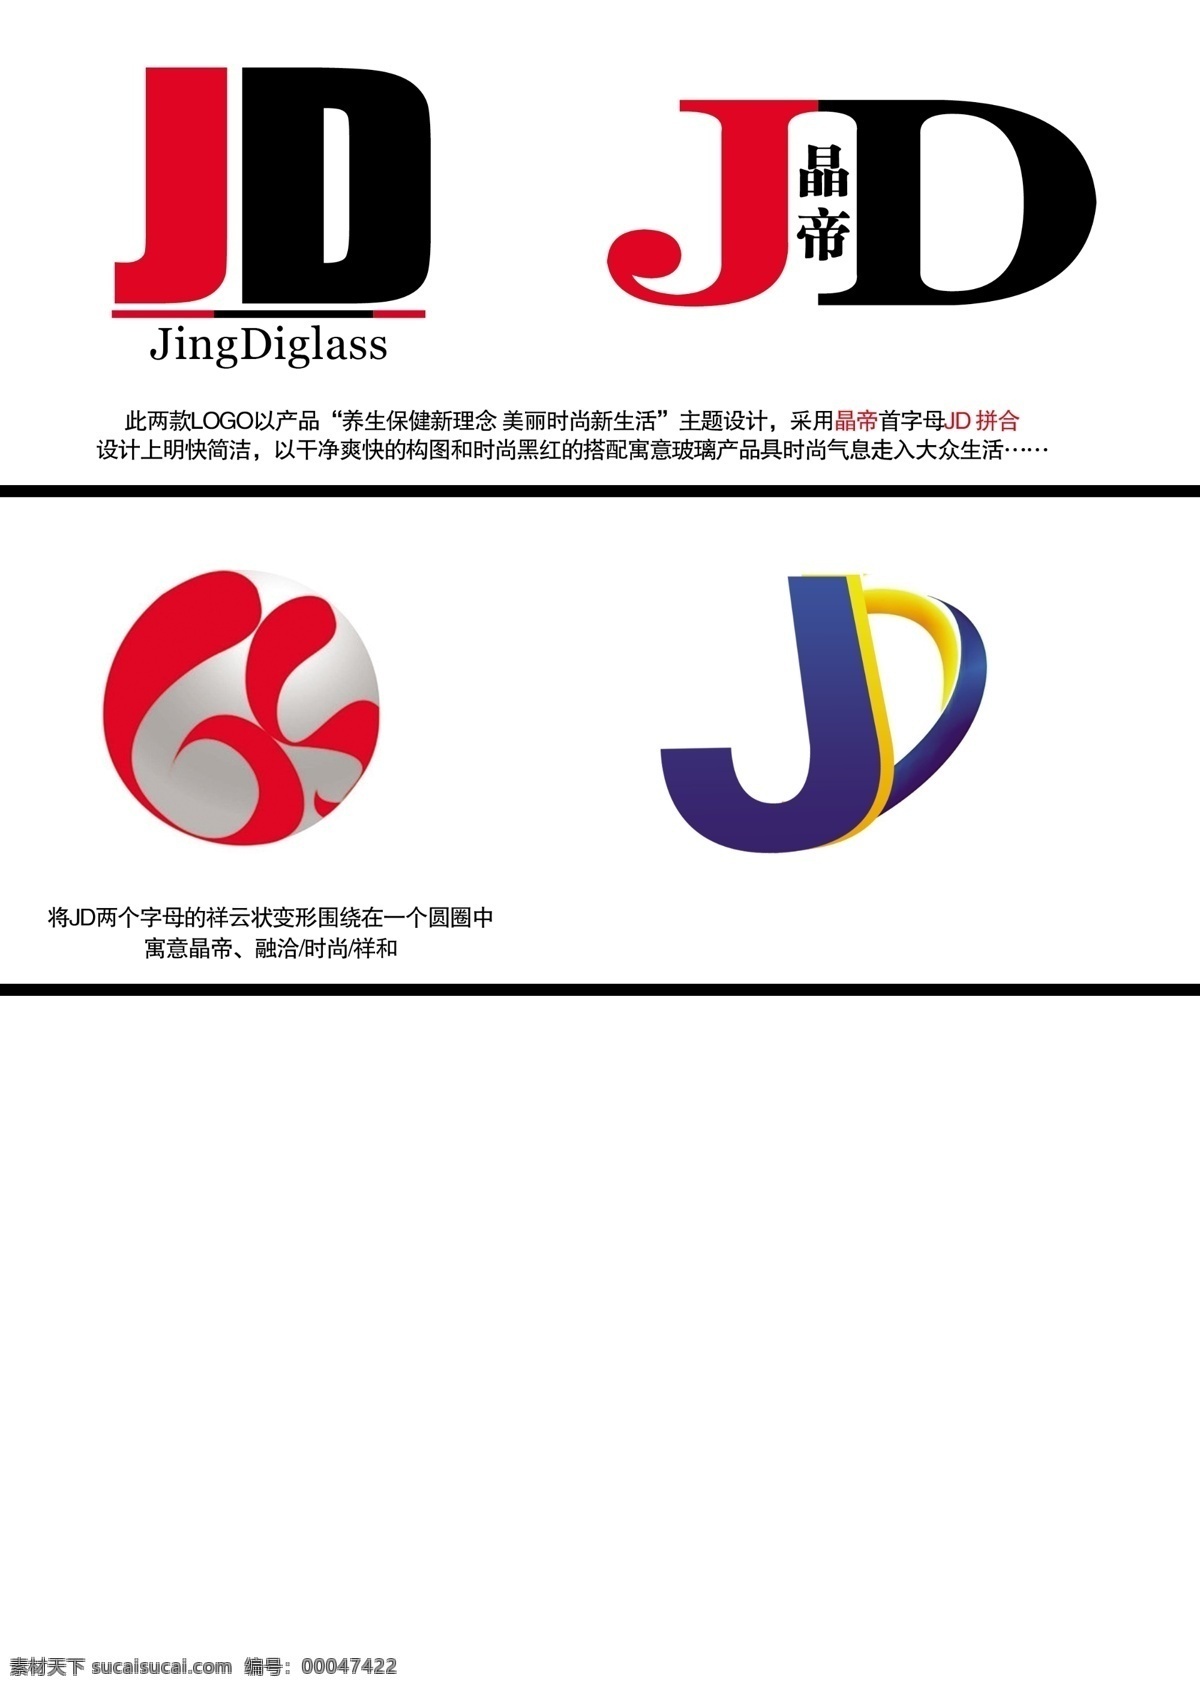 logo 标志设计 广告设计模板 源文件 晶 帝 模板下载 晶帝logo jd 多个logo psd源文件 logo设计